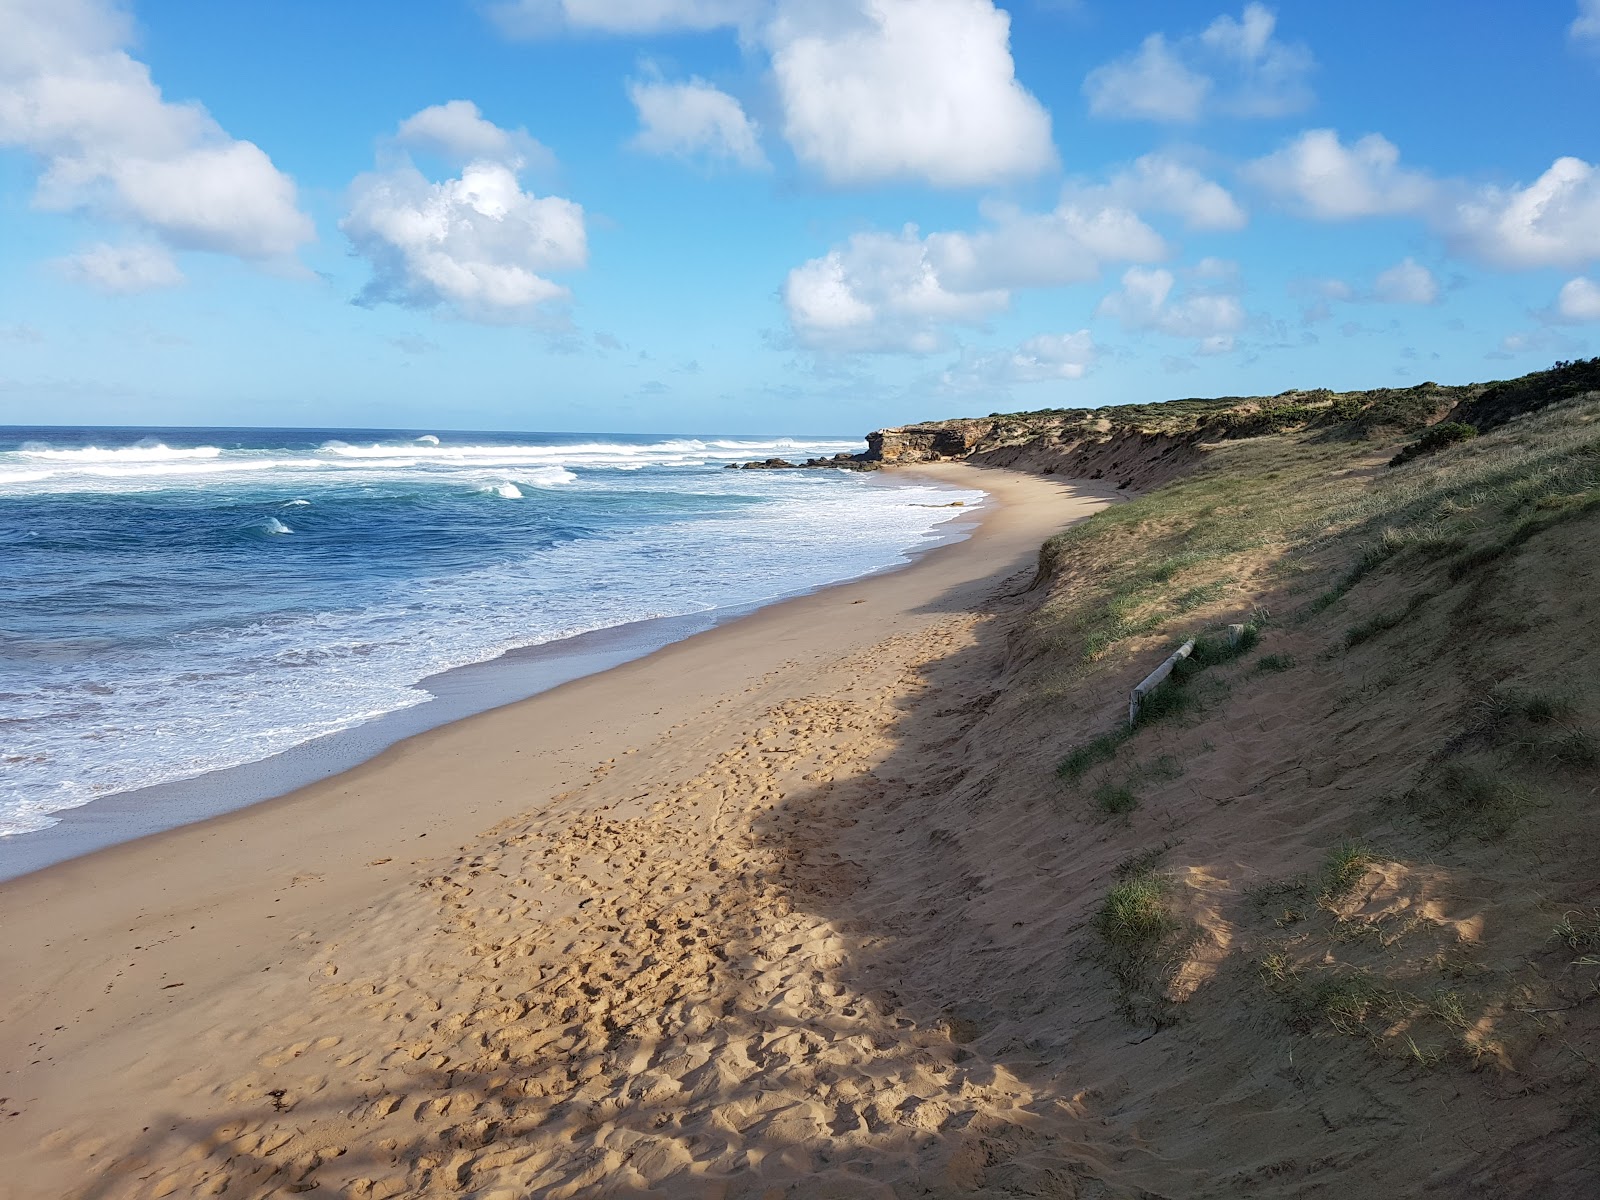 Foto de Gunnamatta Ocean Beach - lugar popular entre los conocedores del relax